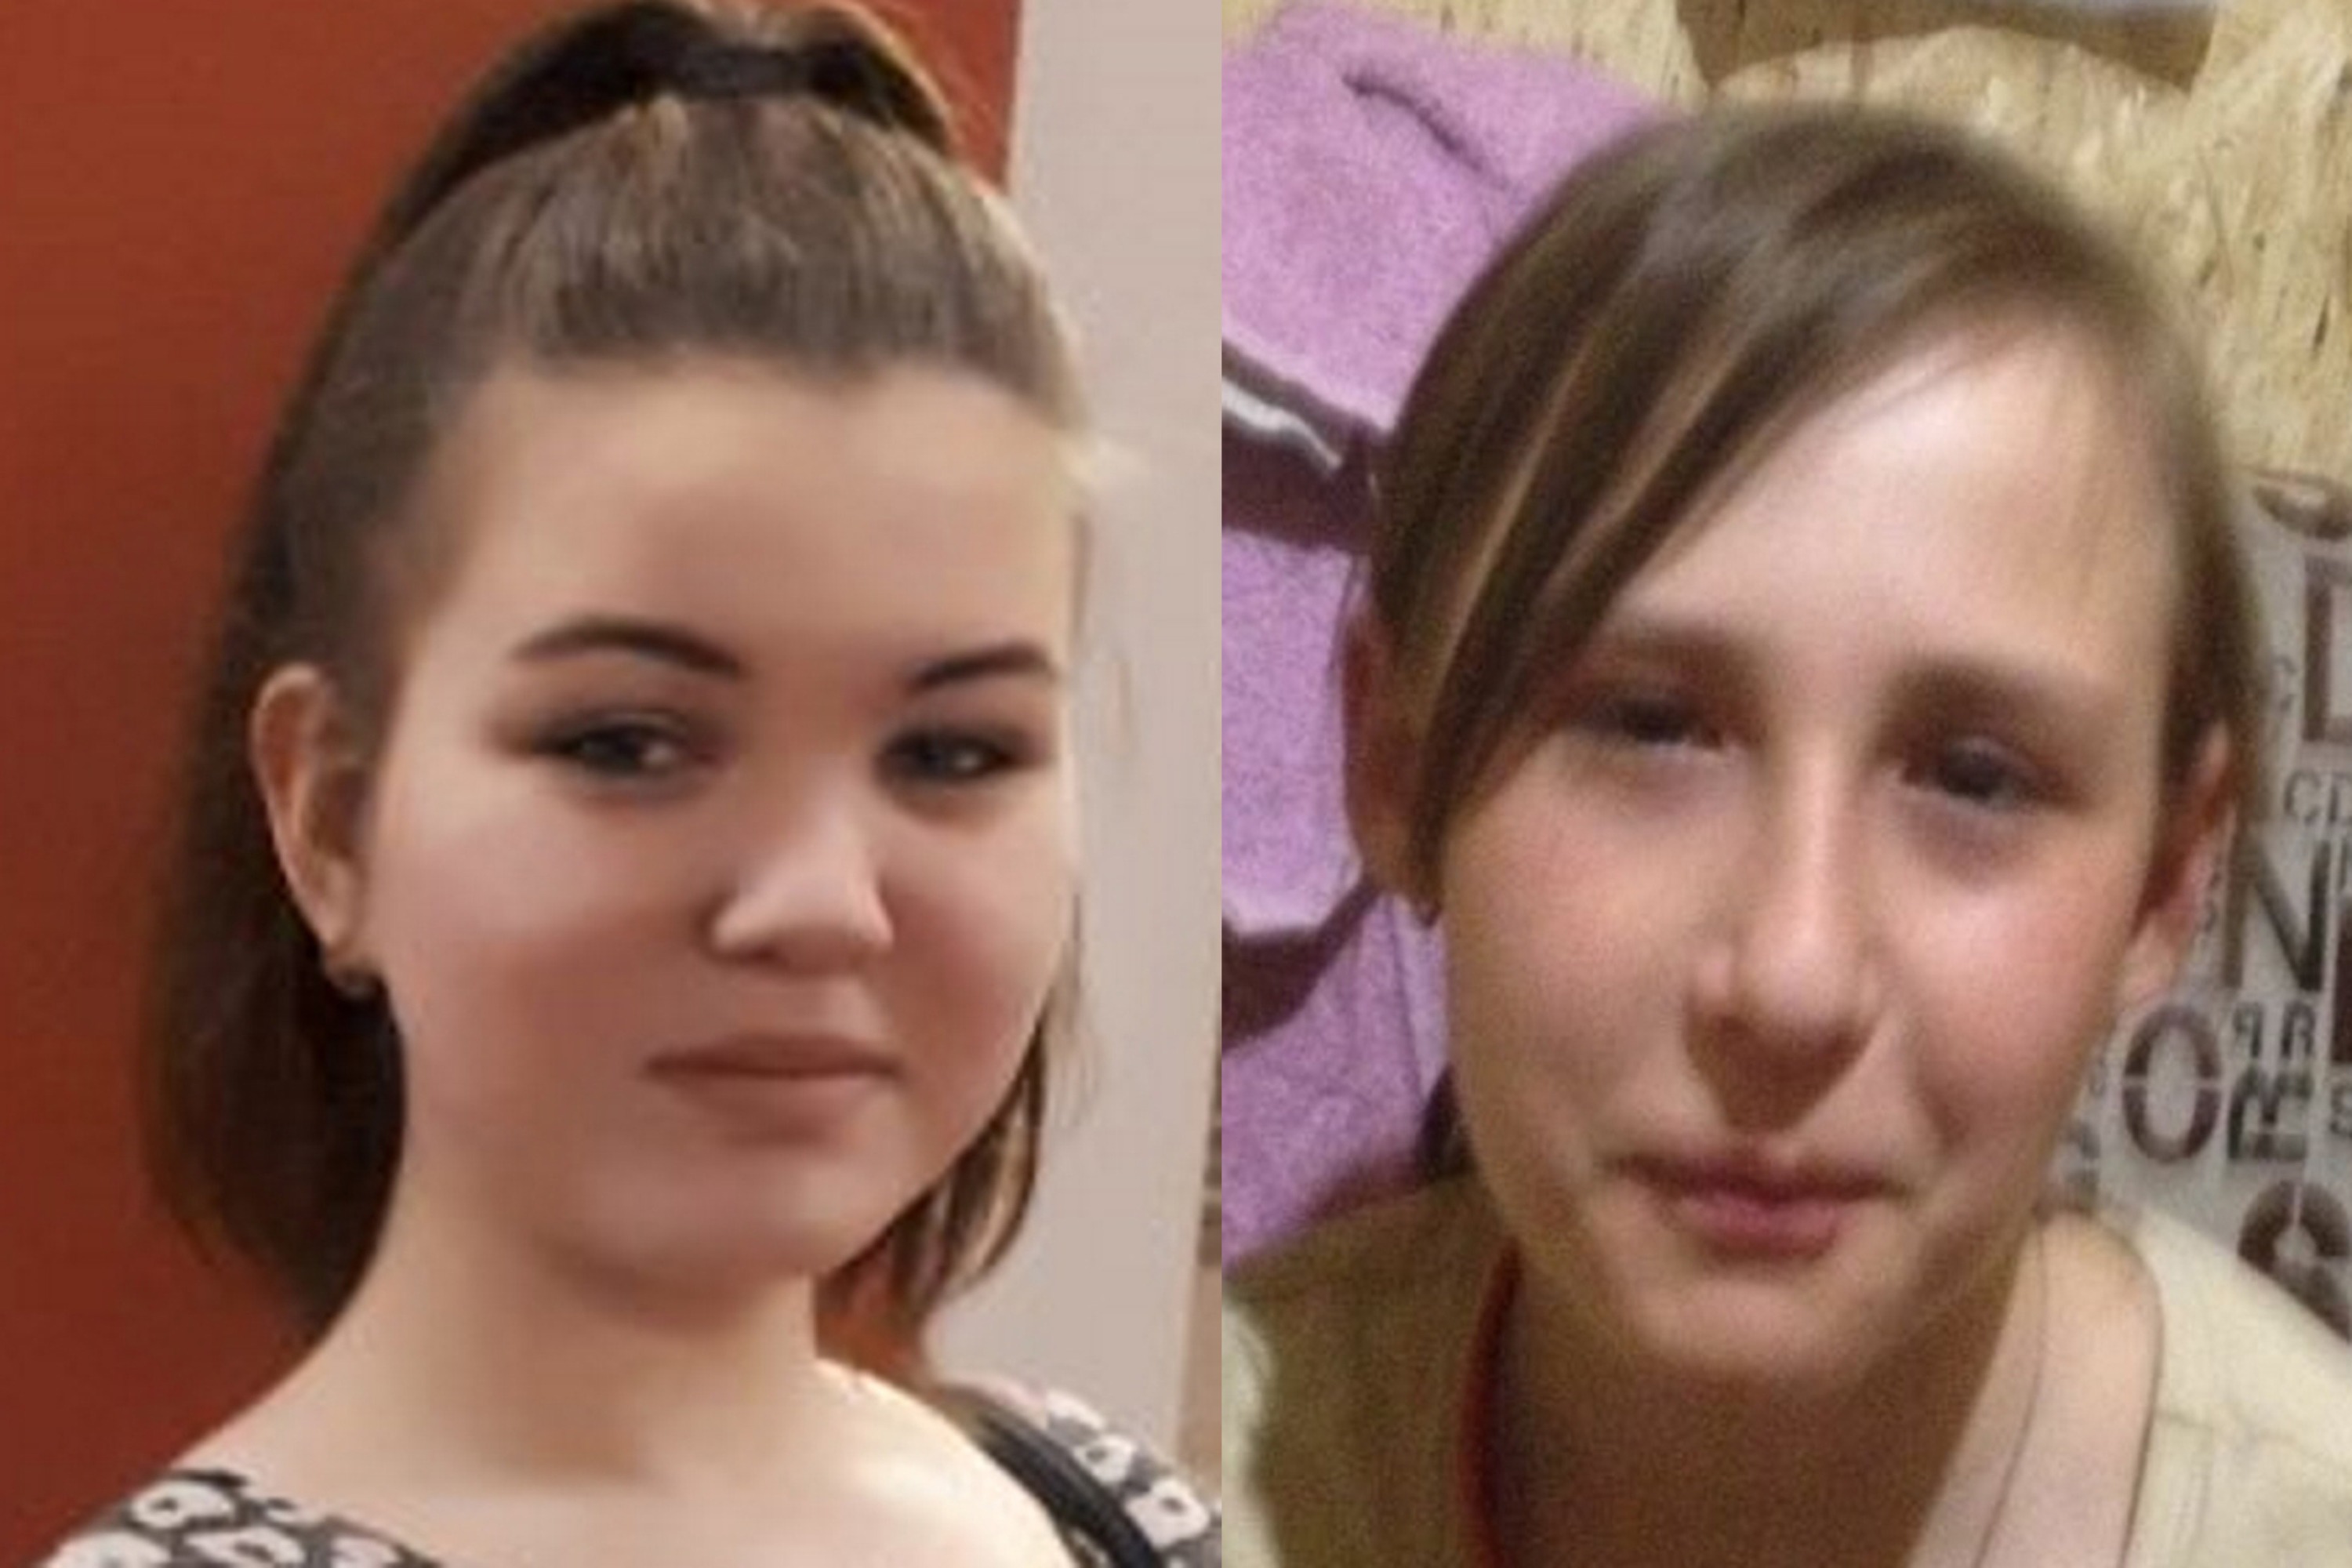 На обоих девушках были. Пропавшие девушки в Новосибирске. Случай в Новосибирске с девушкой волосы. Девочки 2 почдки у лица.